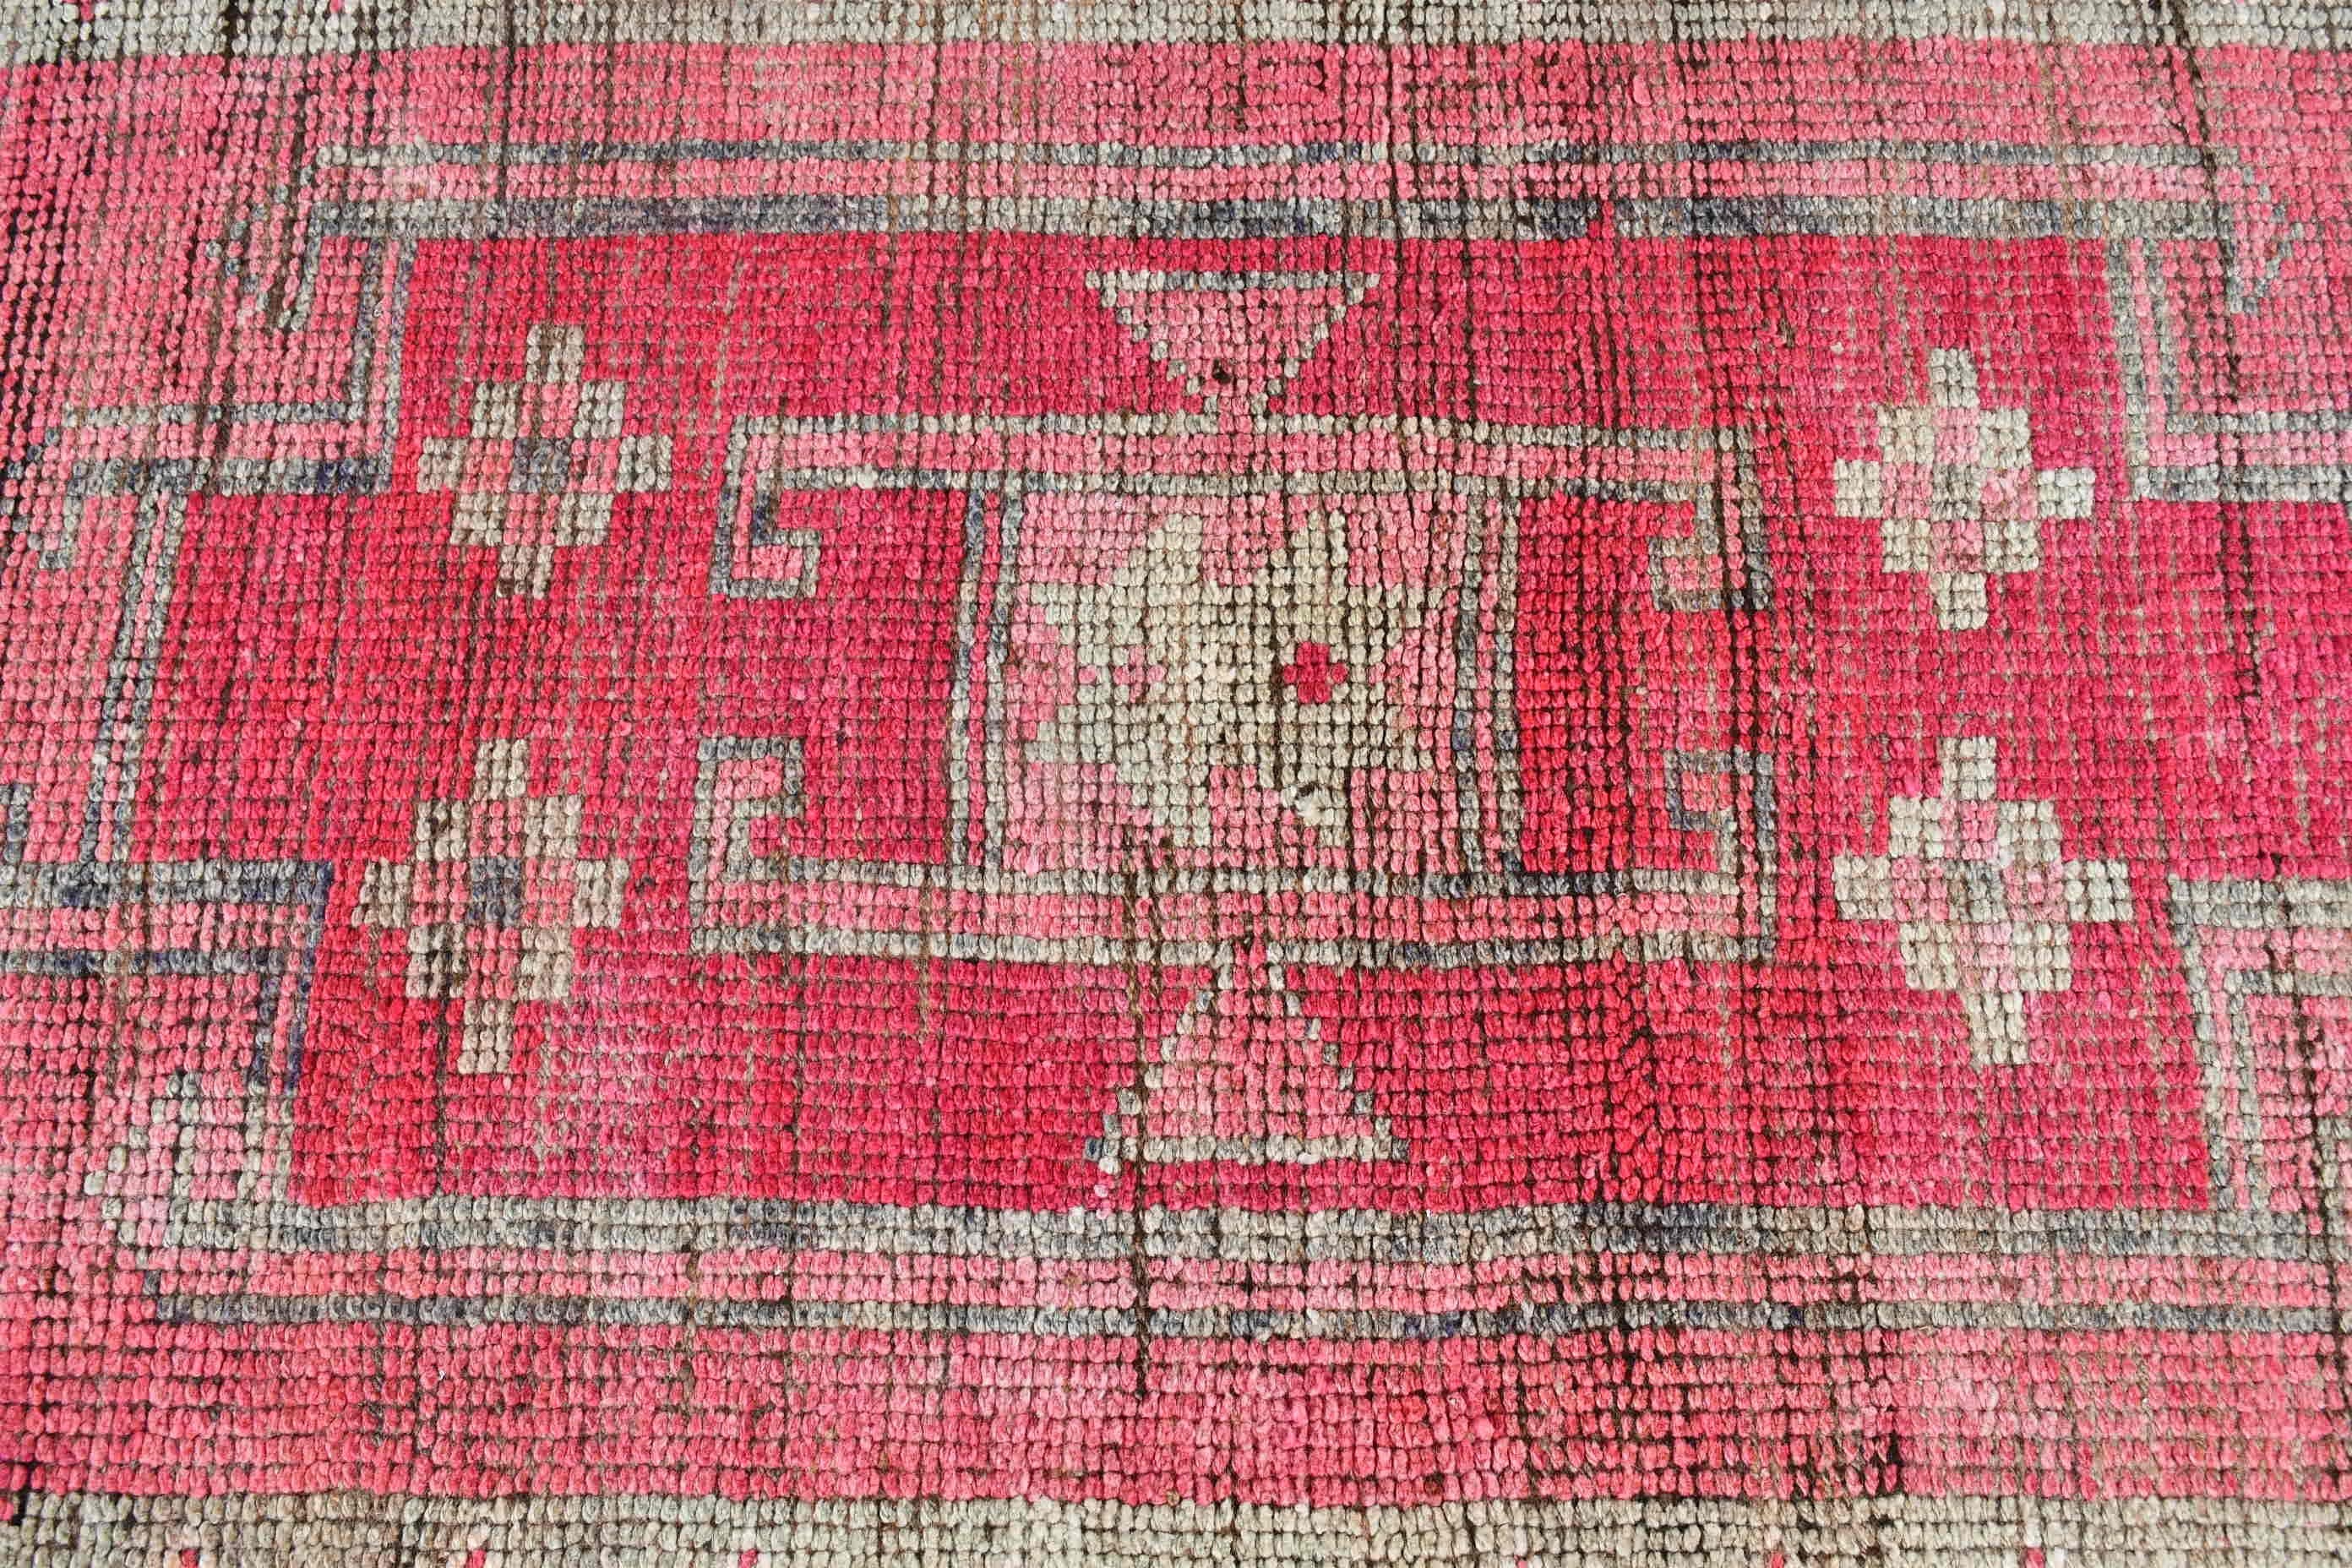 Rugs for Runner, Vintage Rug, Pink  2.9x11 ft Runner Rugs, Oriental Rug, Turkish Rugs, Wool Rugs, Abstract Rug, Corridor Rug